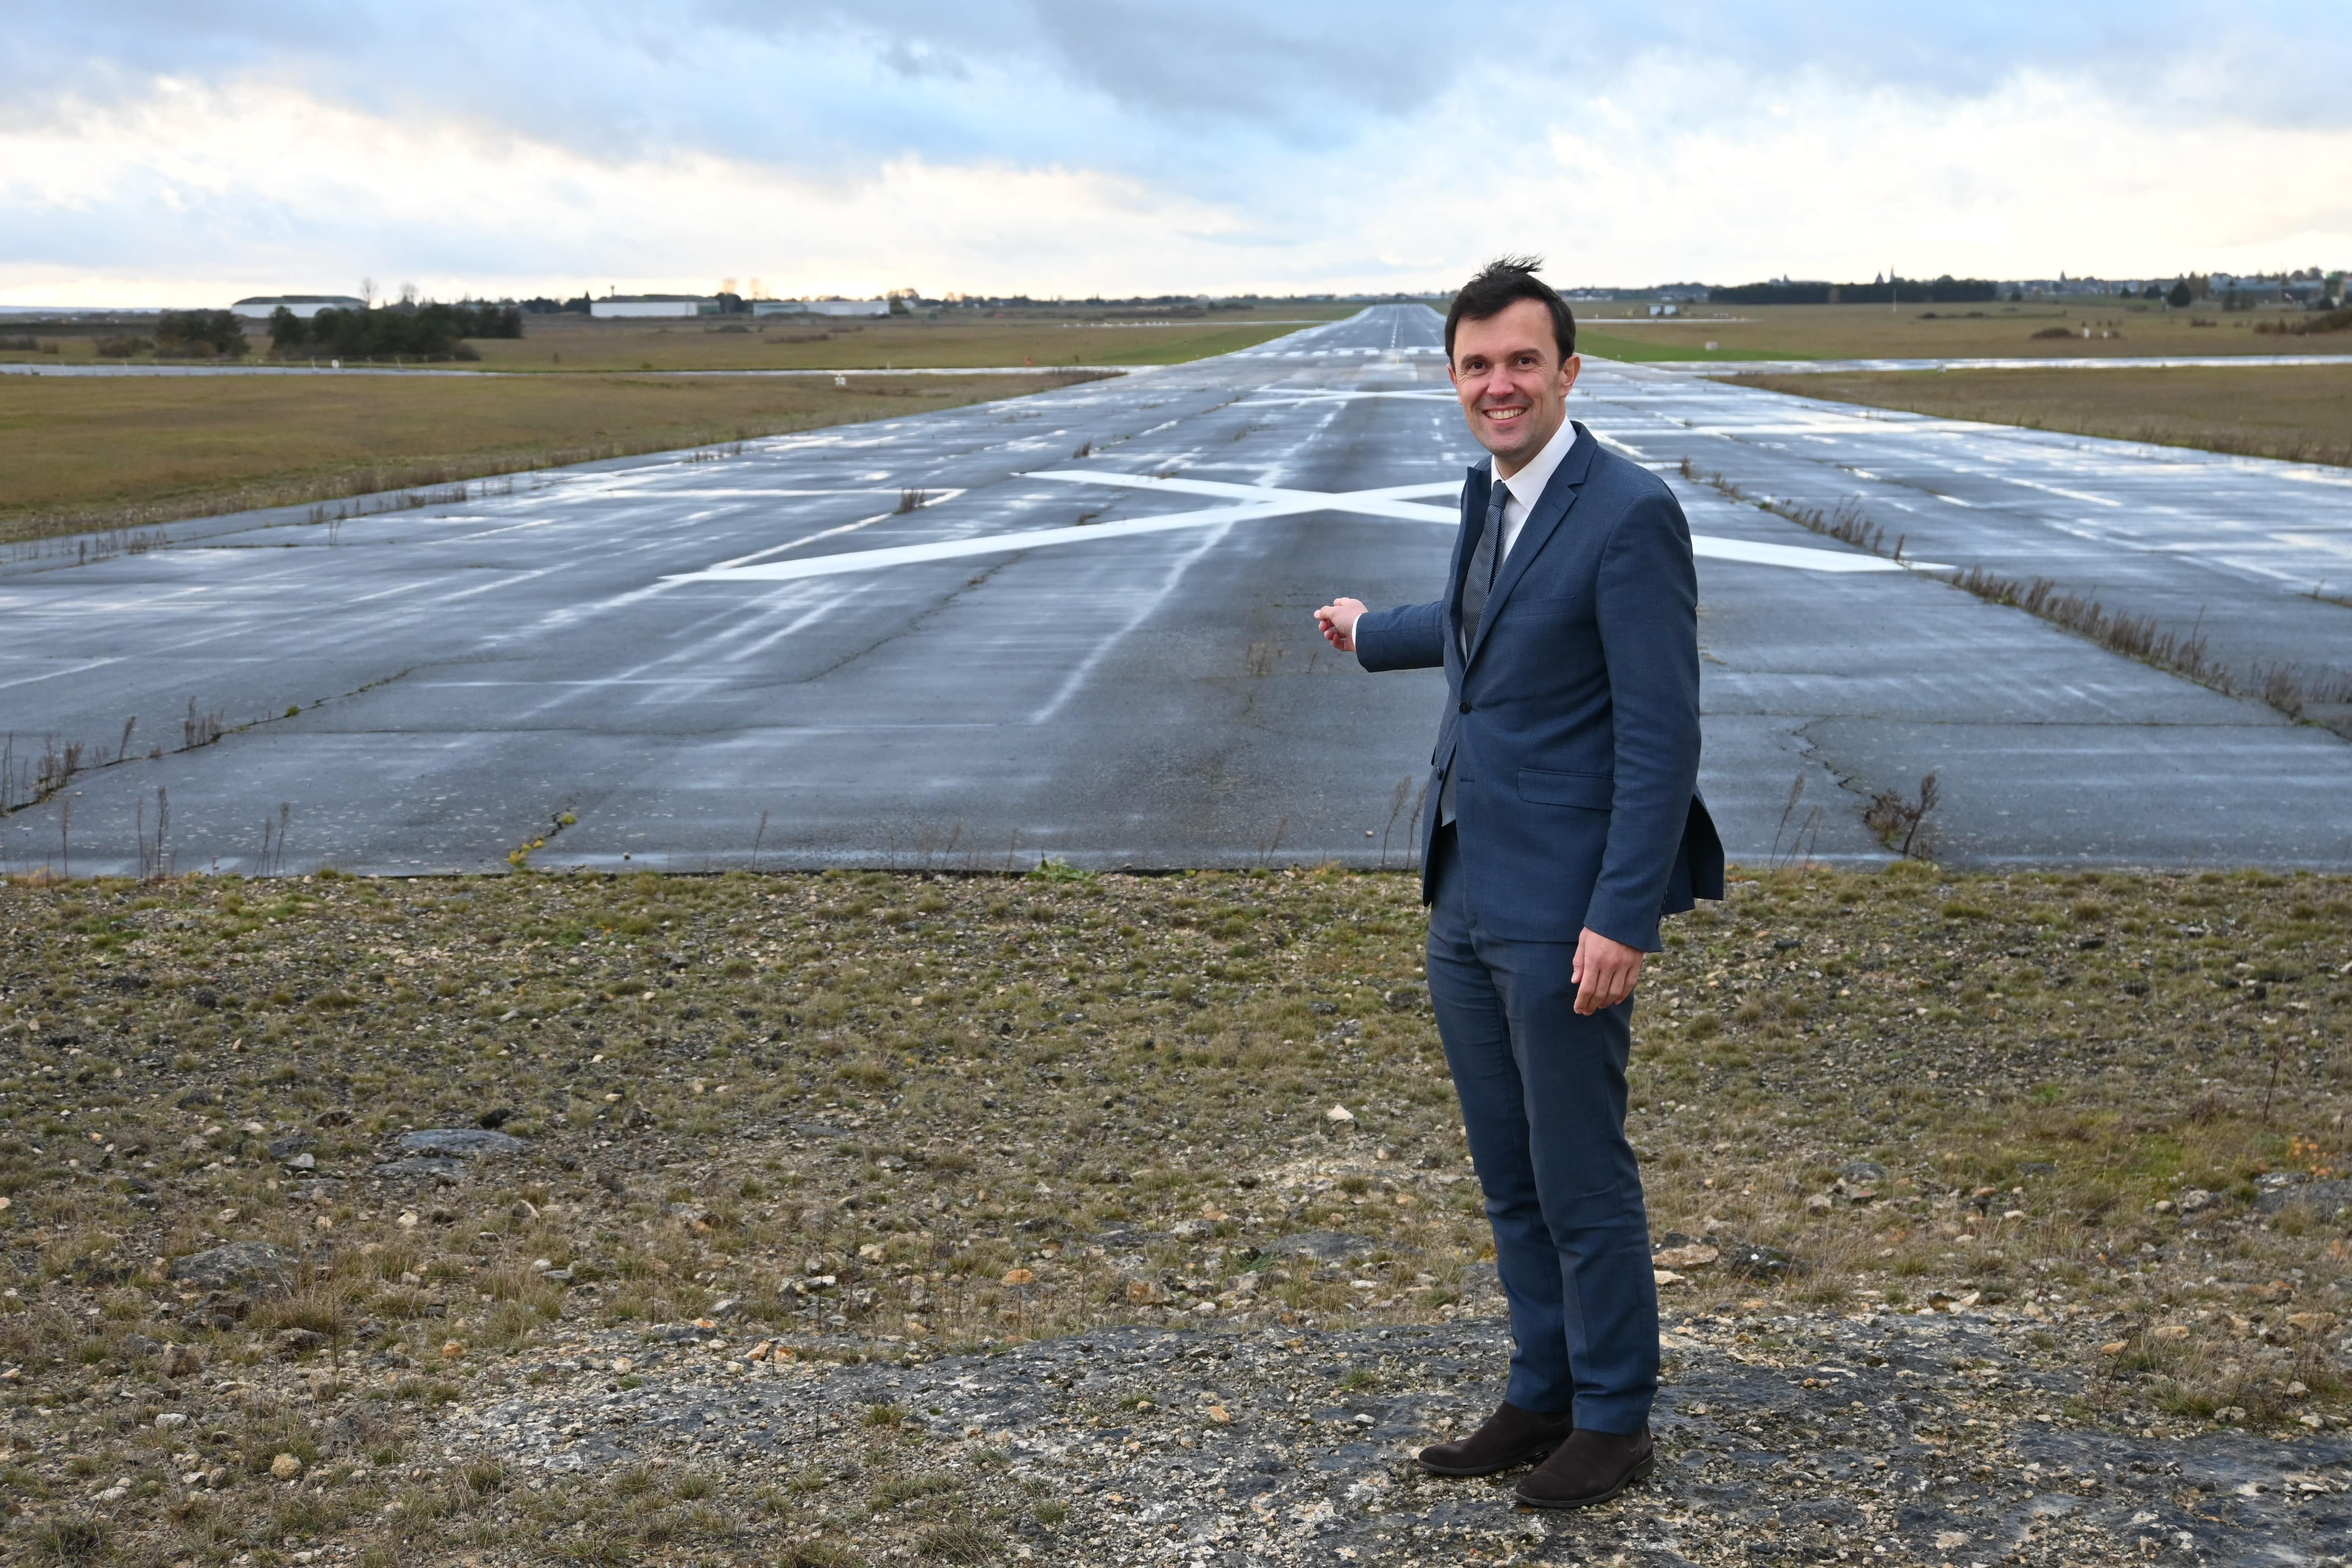 Énergie, transport, formation : comment l'ex-base aérienne de Châteaudun veut attirer les entreprises